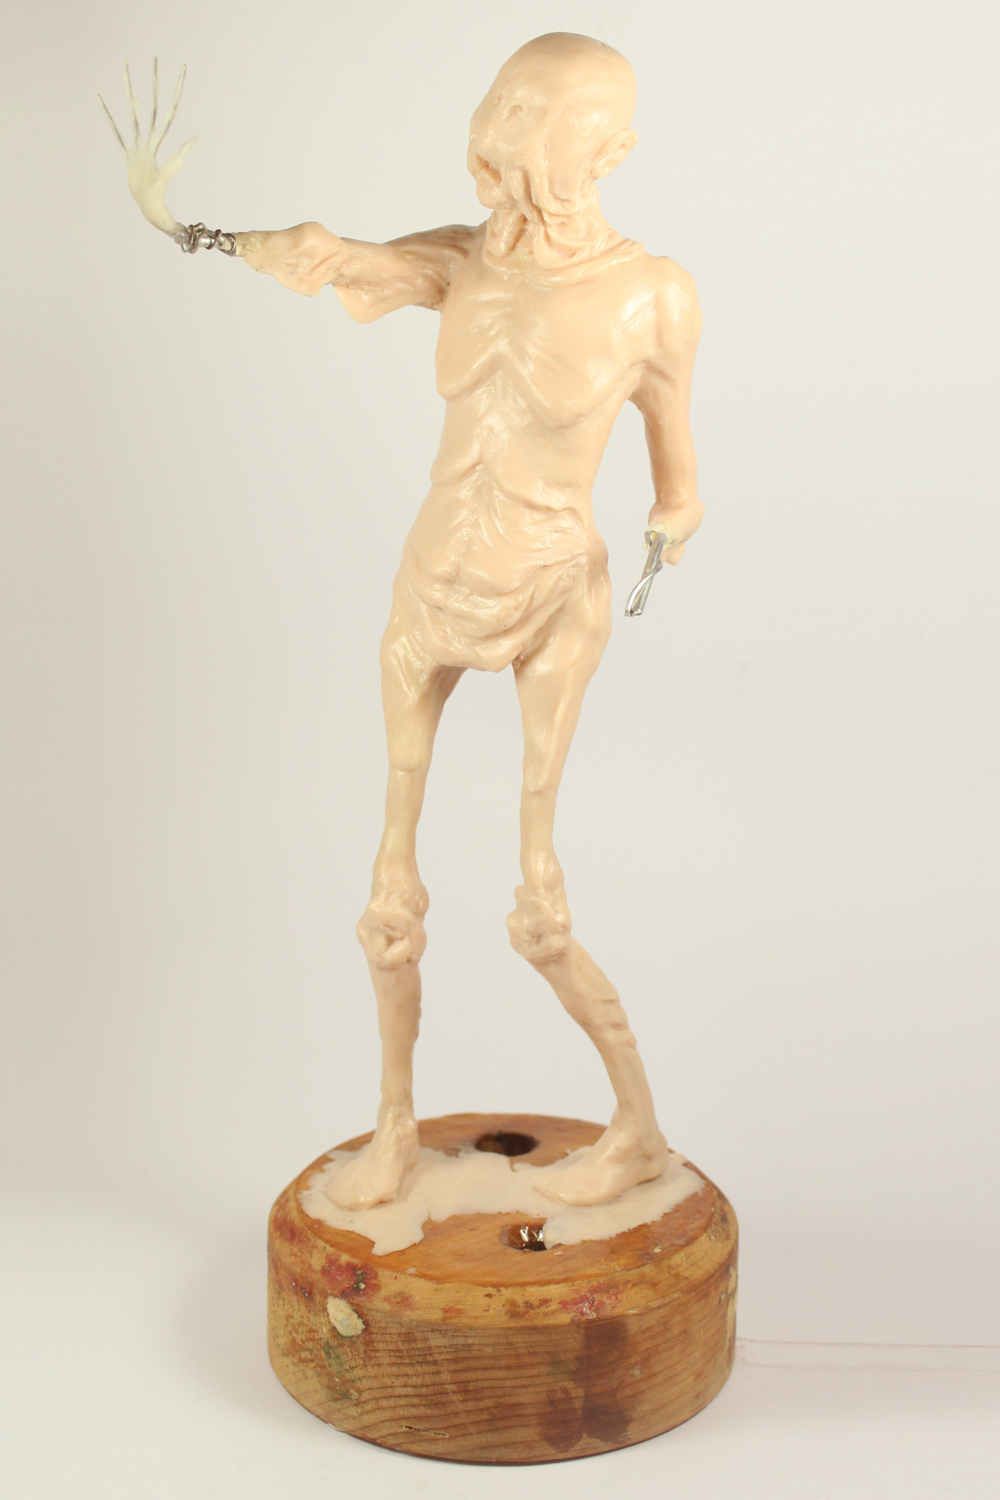 Pale Man sculpture by Julie Sharpe